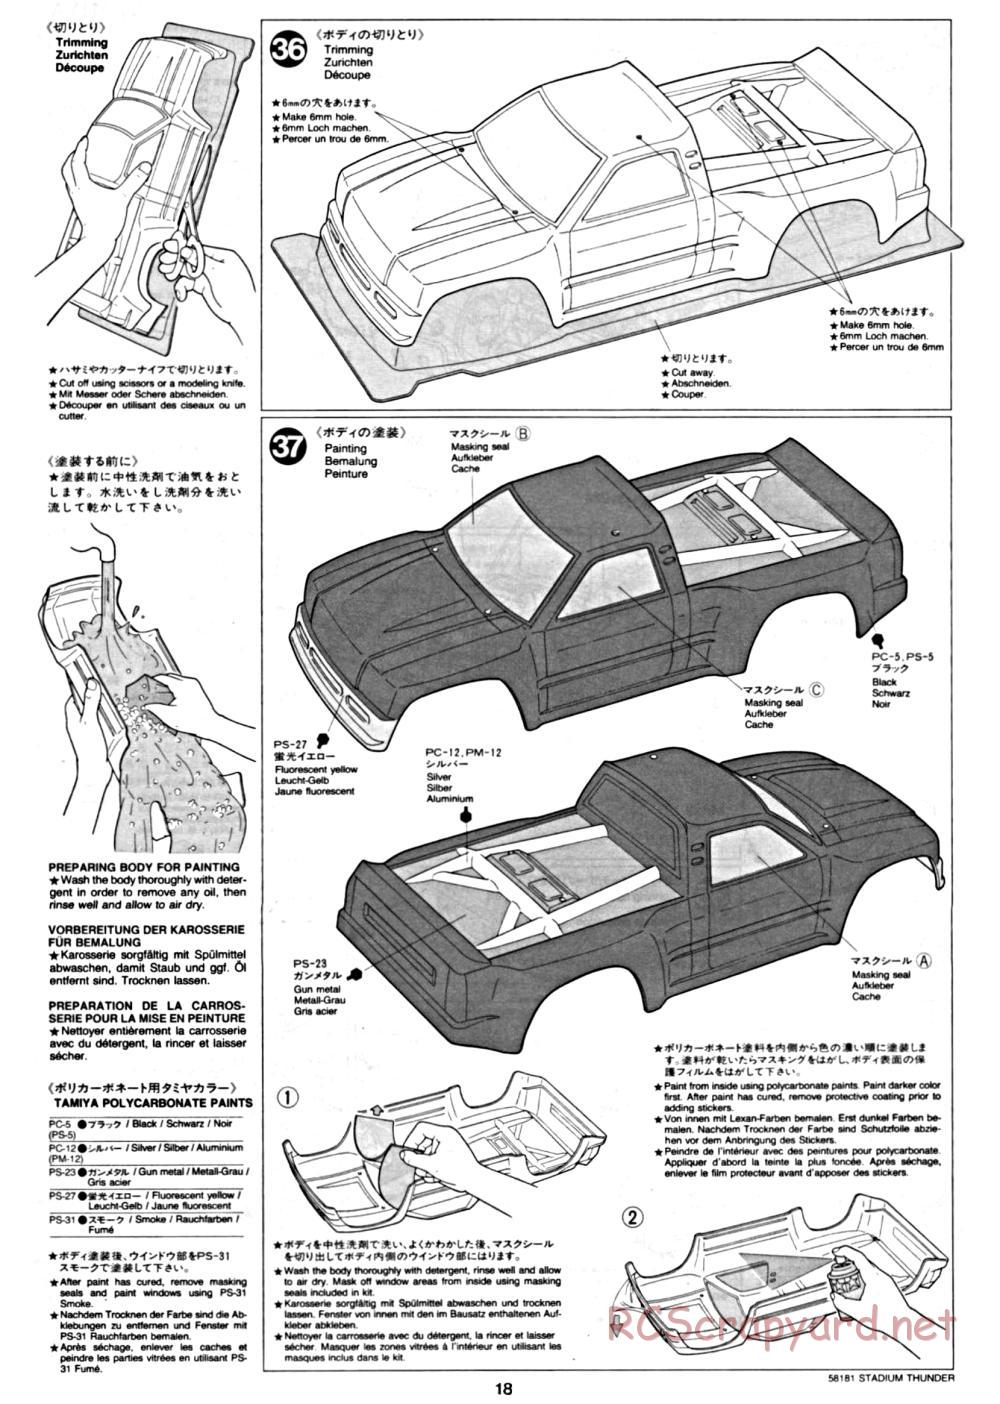 Tamiya - Stadium Thunder Chassis - Manual - Page 18